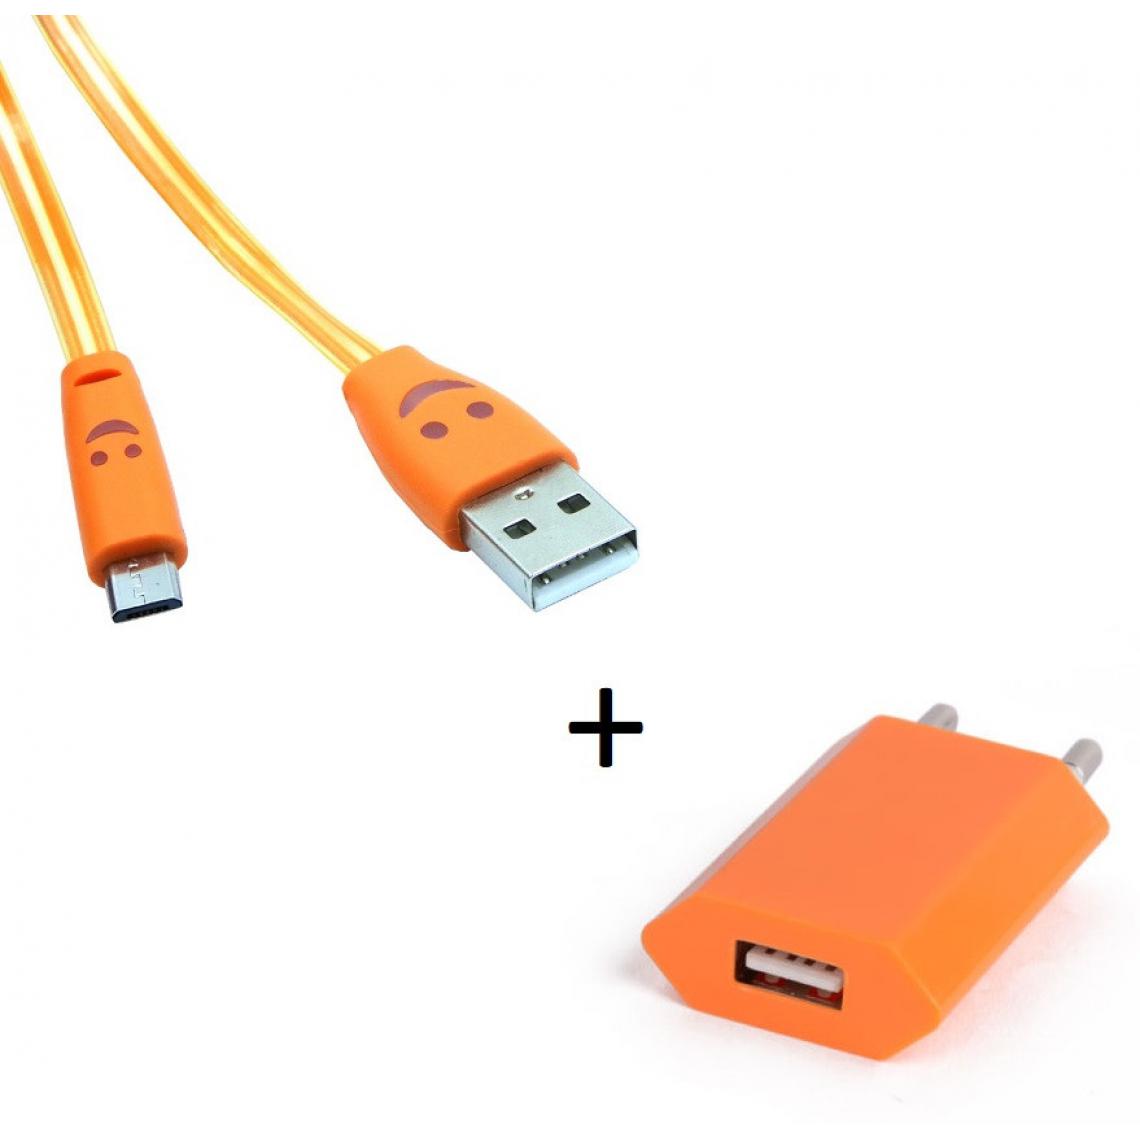 Shot - Pack Chargeur pour HUAWEI Y6 2019 Smartphone Micro USB (Cable Smiley LED + Prise Secteur USB) Android (ORANGE) - Chargeur secteur téléphone